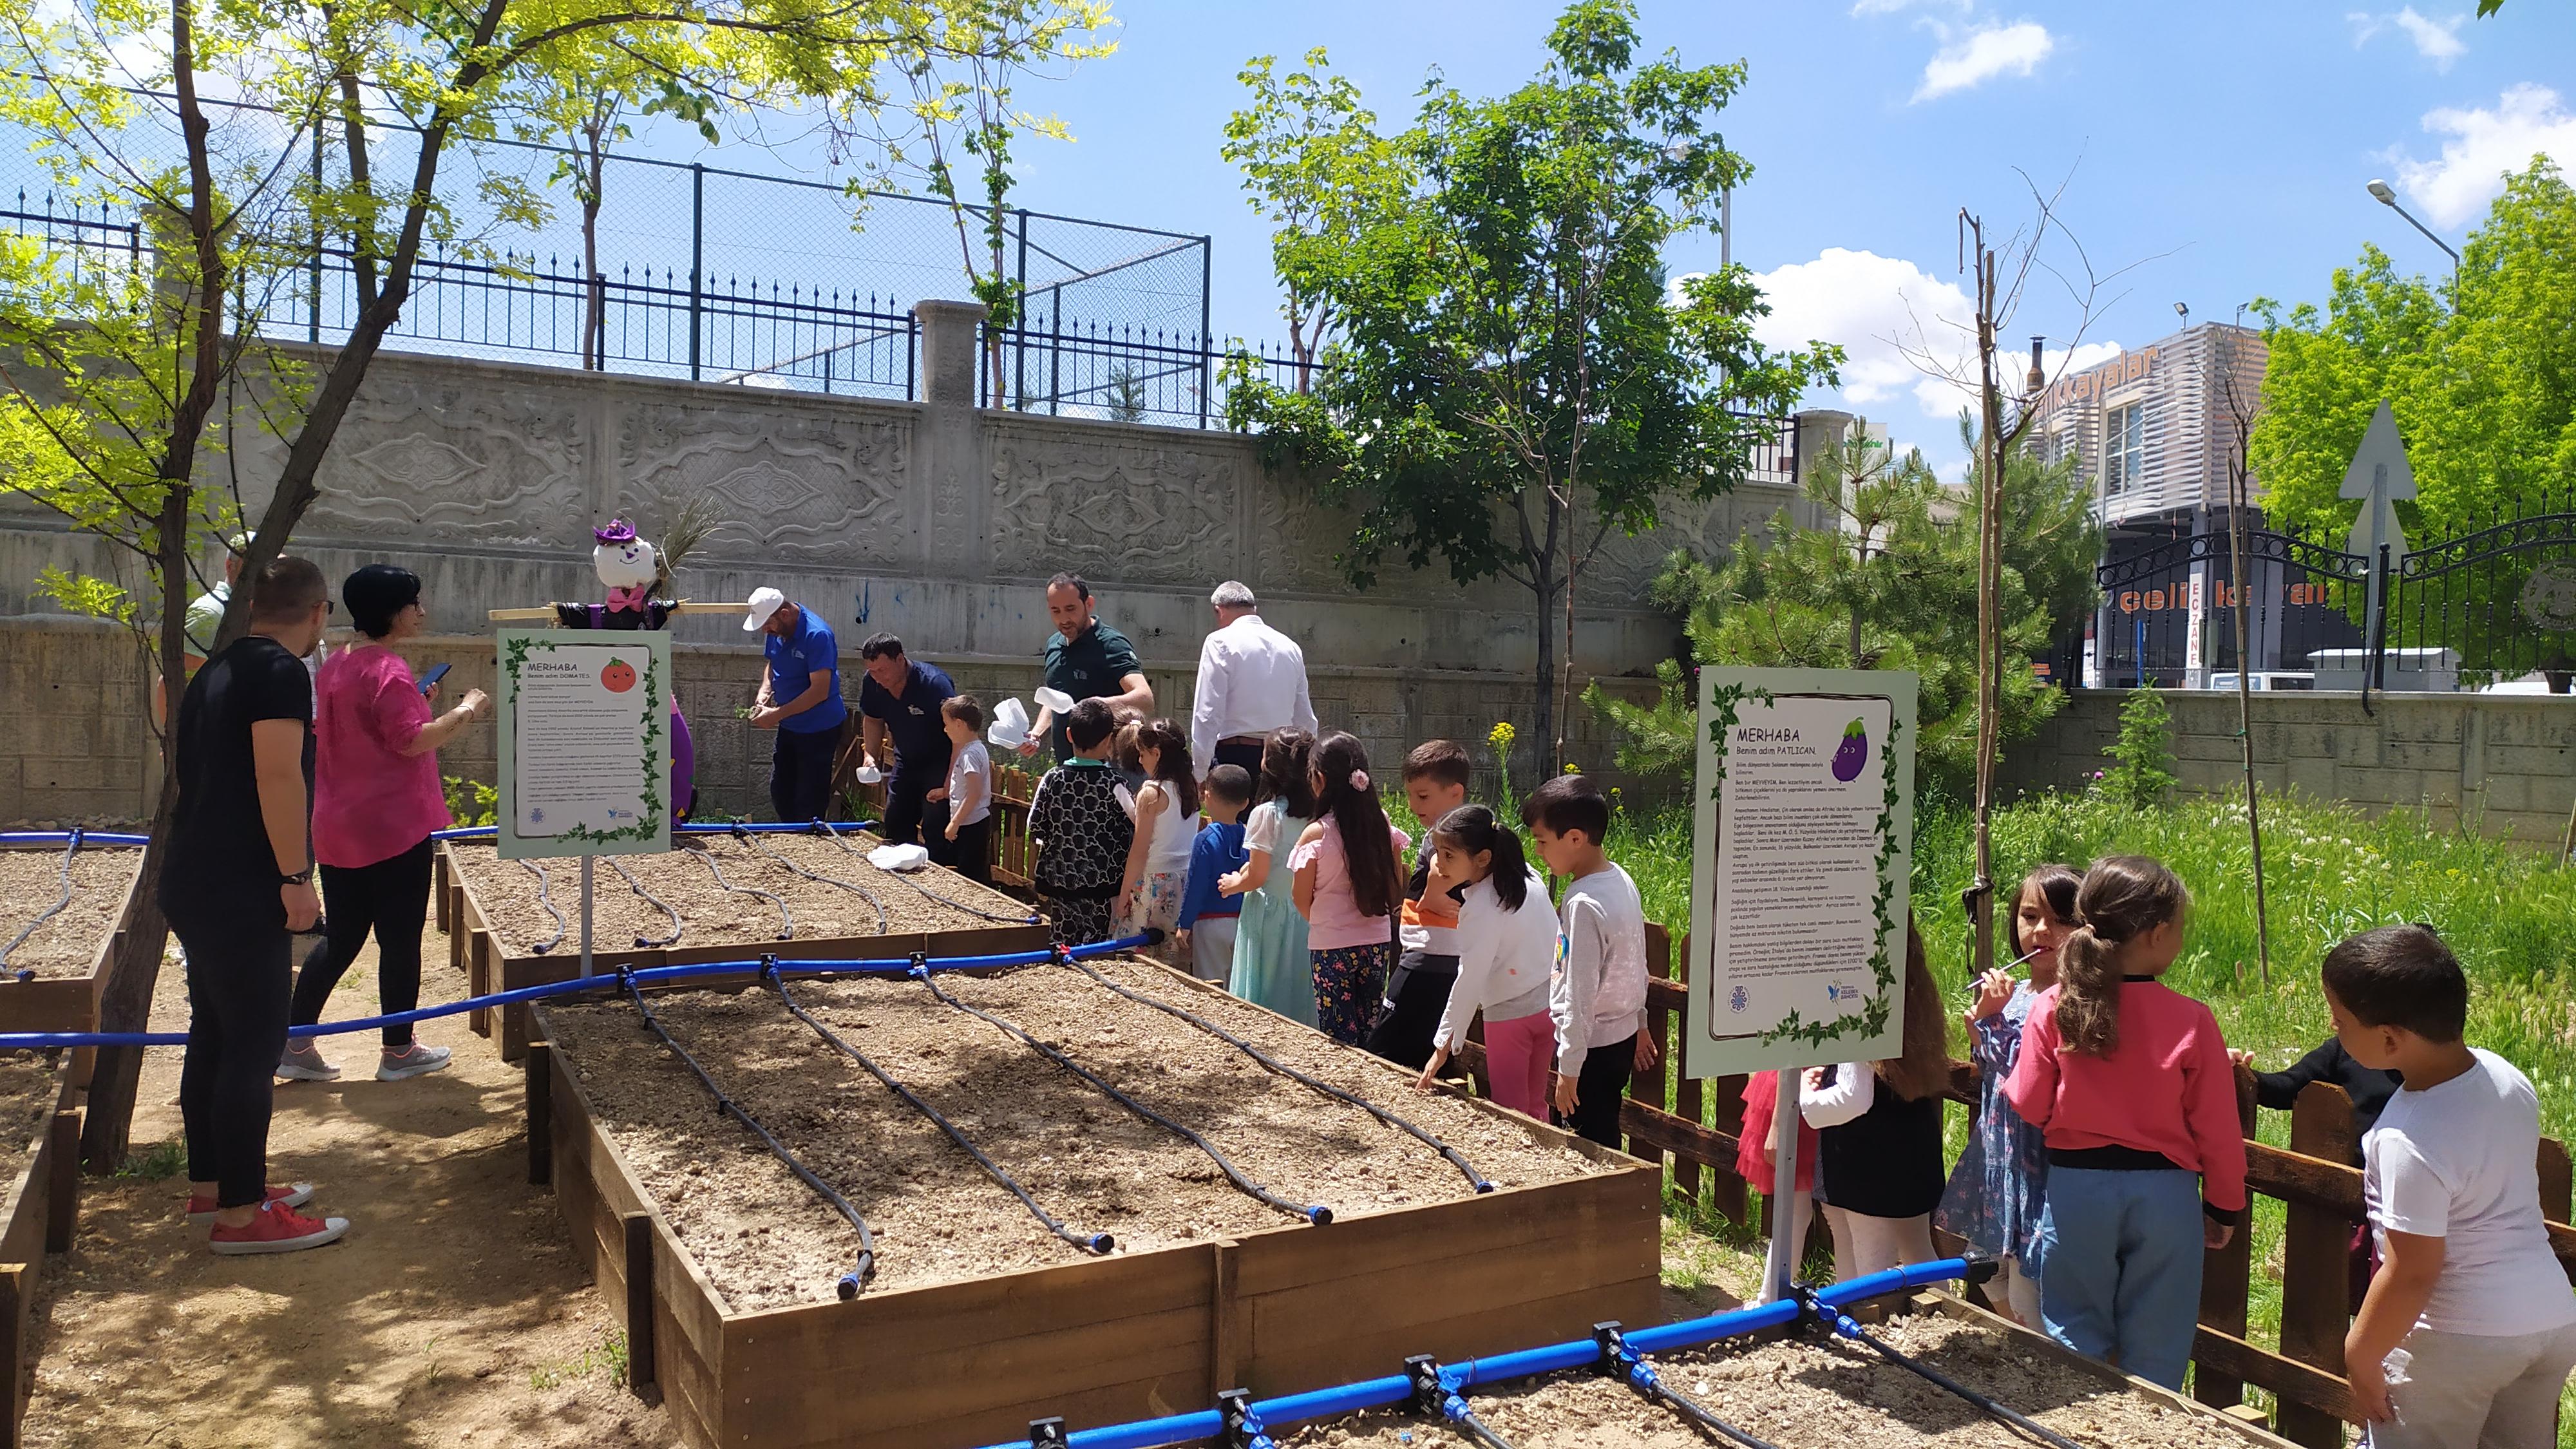 Konya Tropikal Kelebek Bahçesi, 4 okulda Okul Bostanı ve Böcek Evi Projesine başladı